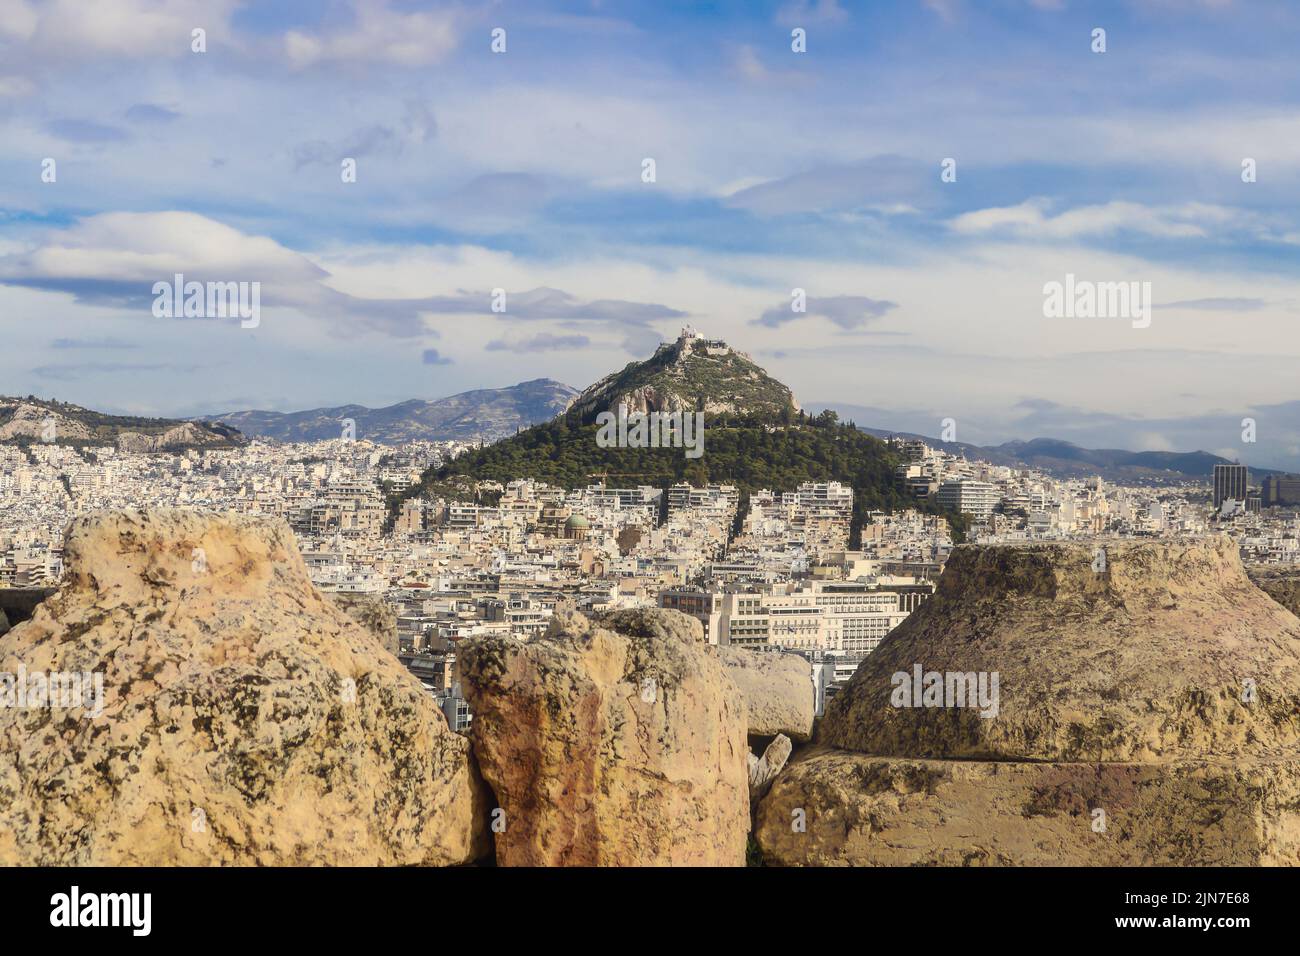 La Capilla Georgios encalada encaramada en la cima de la colina Lykavittos en Atenas, vista desde detrás de las paredes rocosas de la Acrópolis Foto de stock